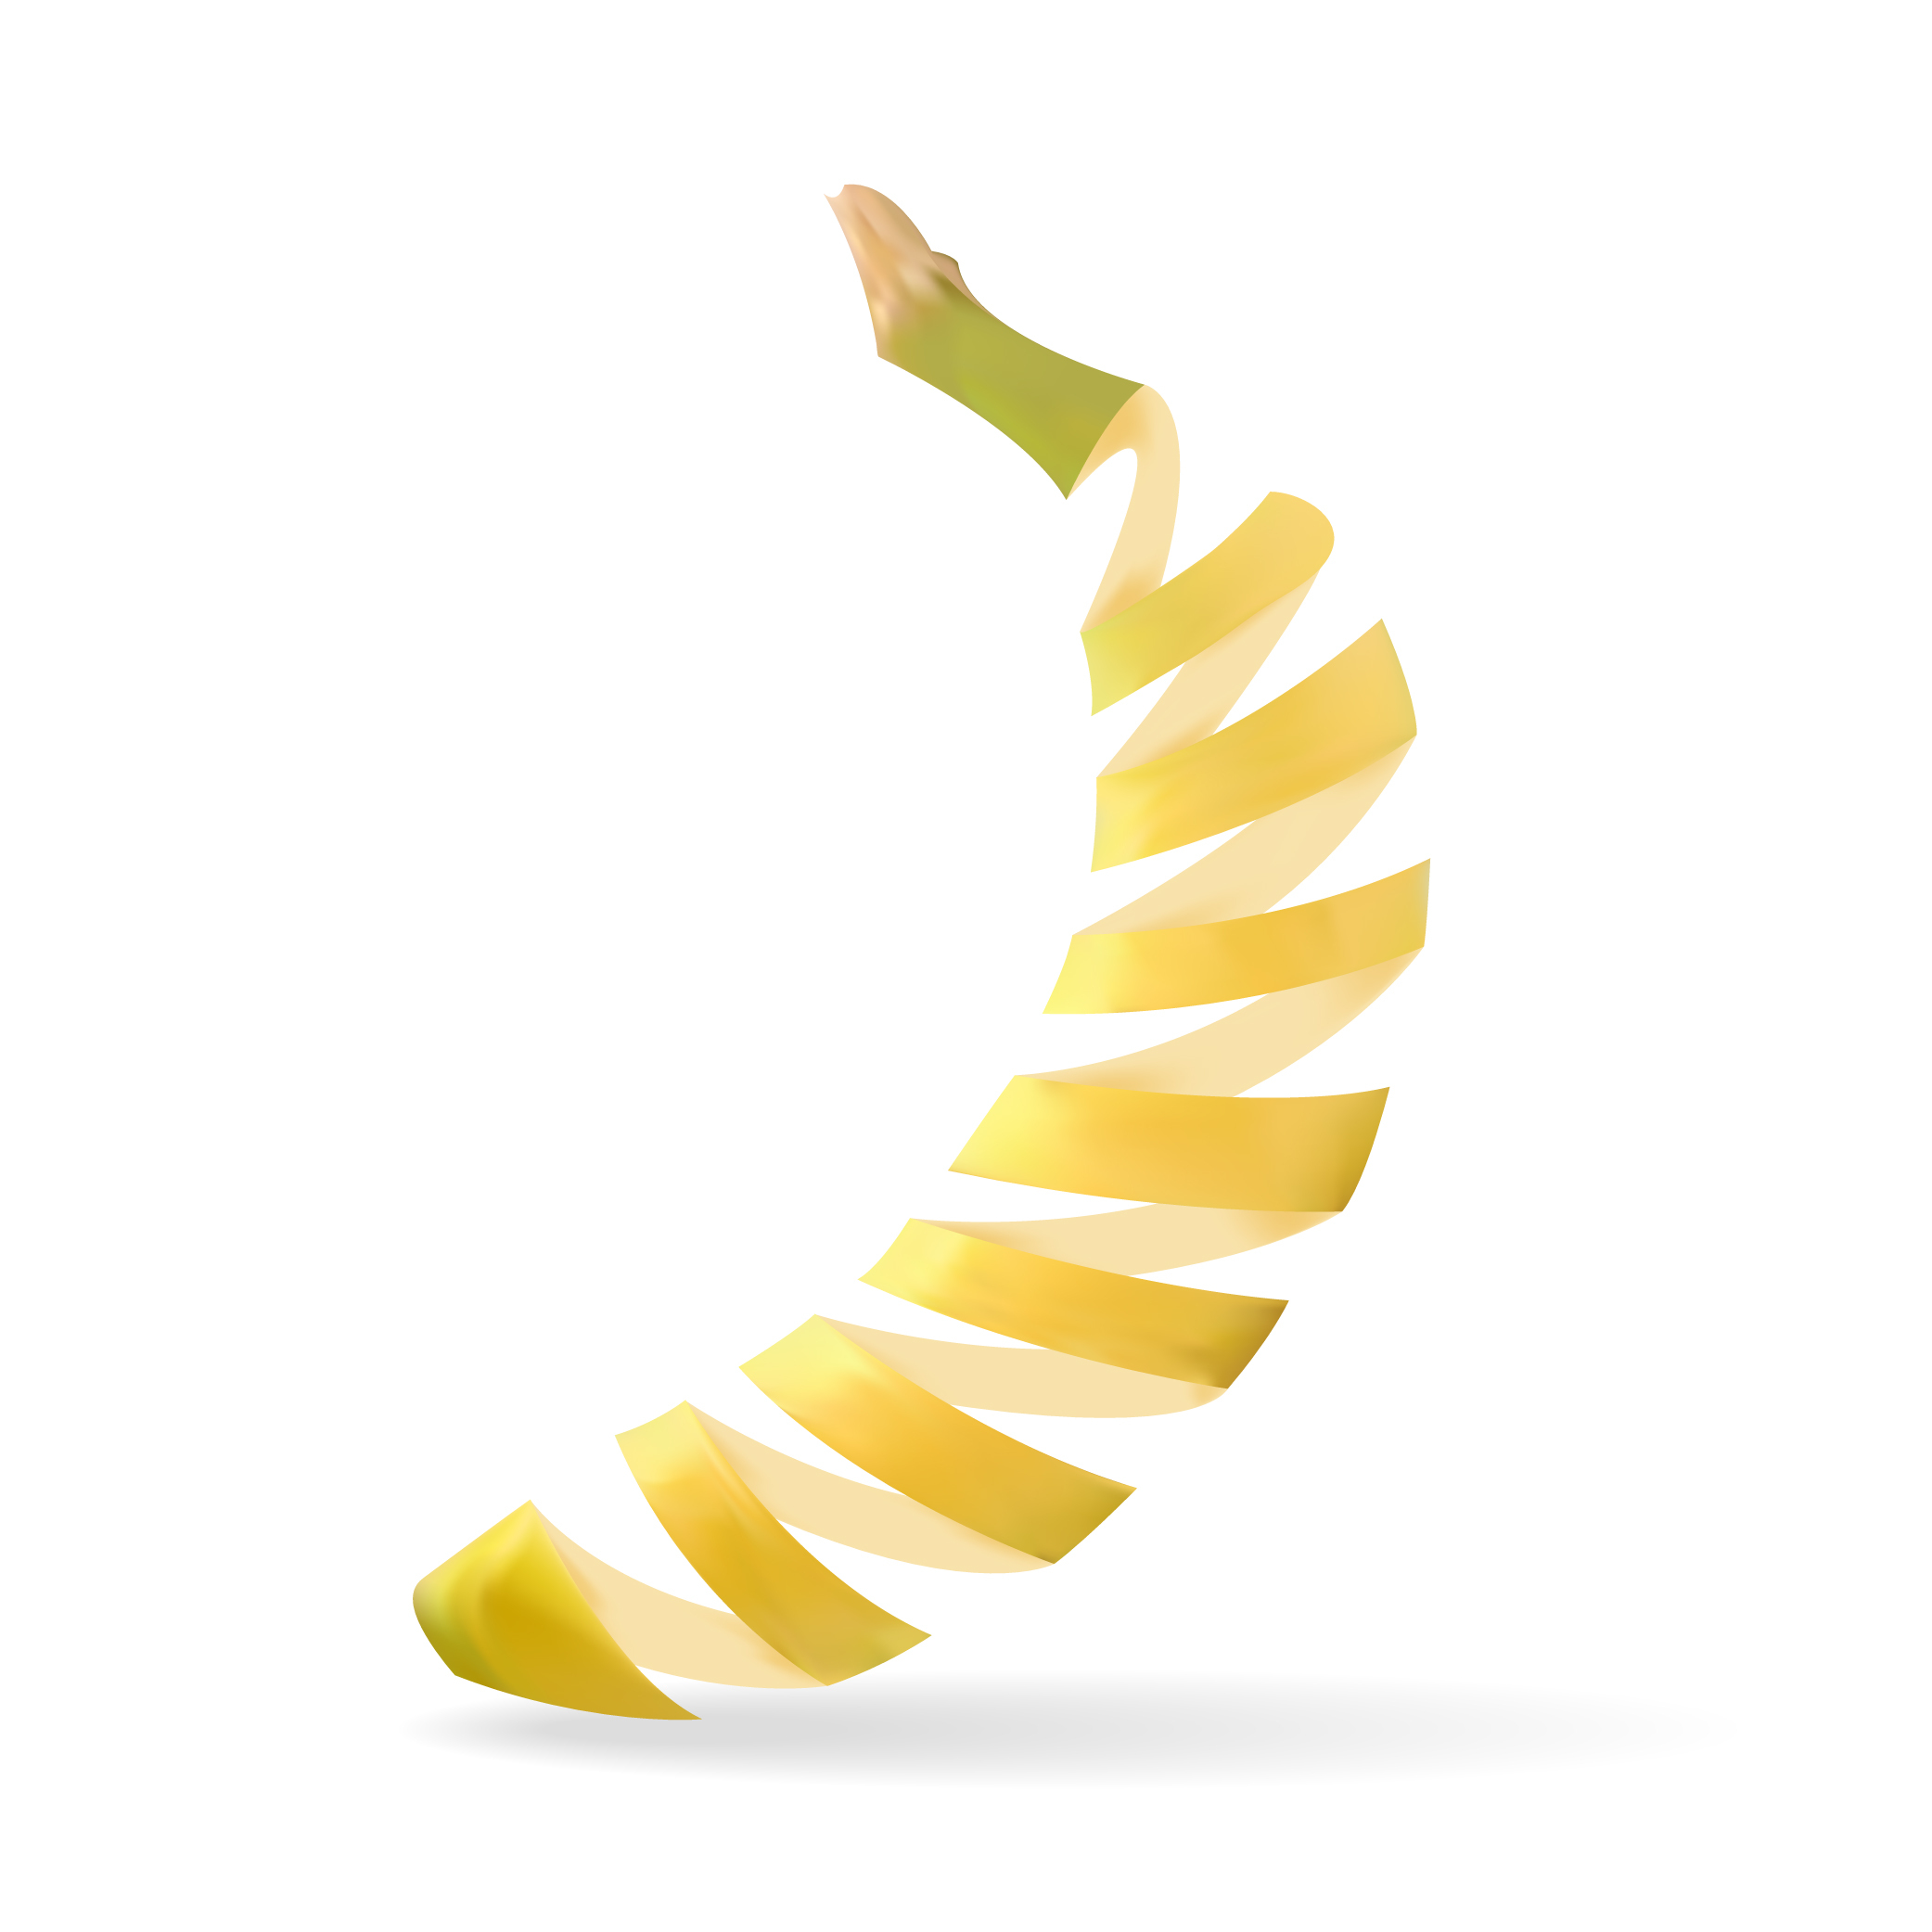 la peau de banane, parfaite pour notre santé !